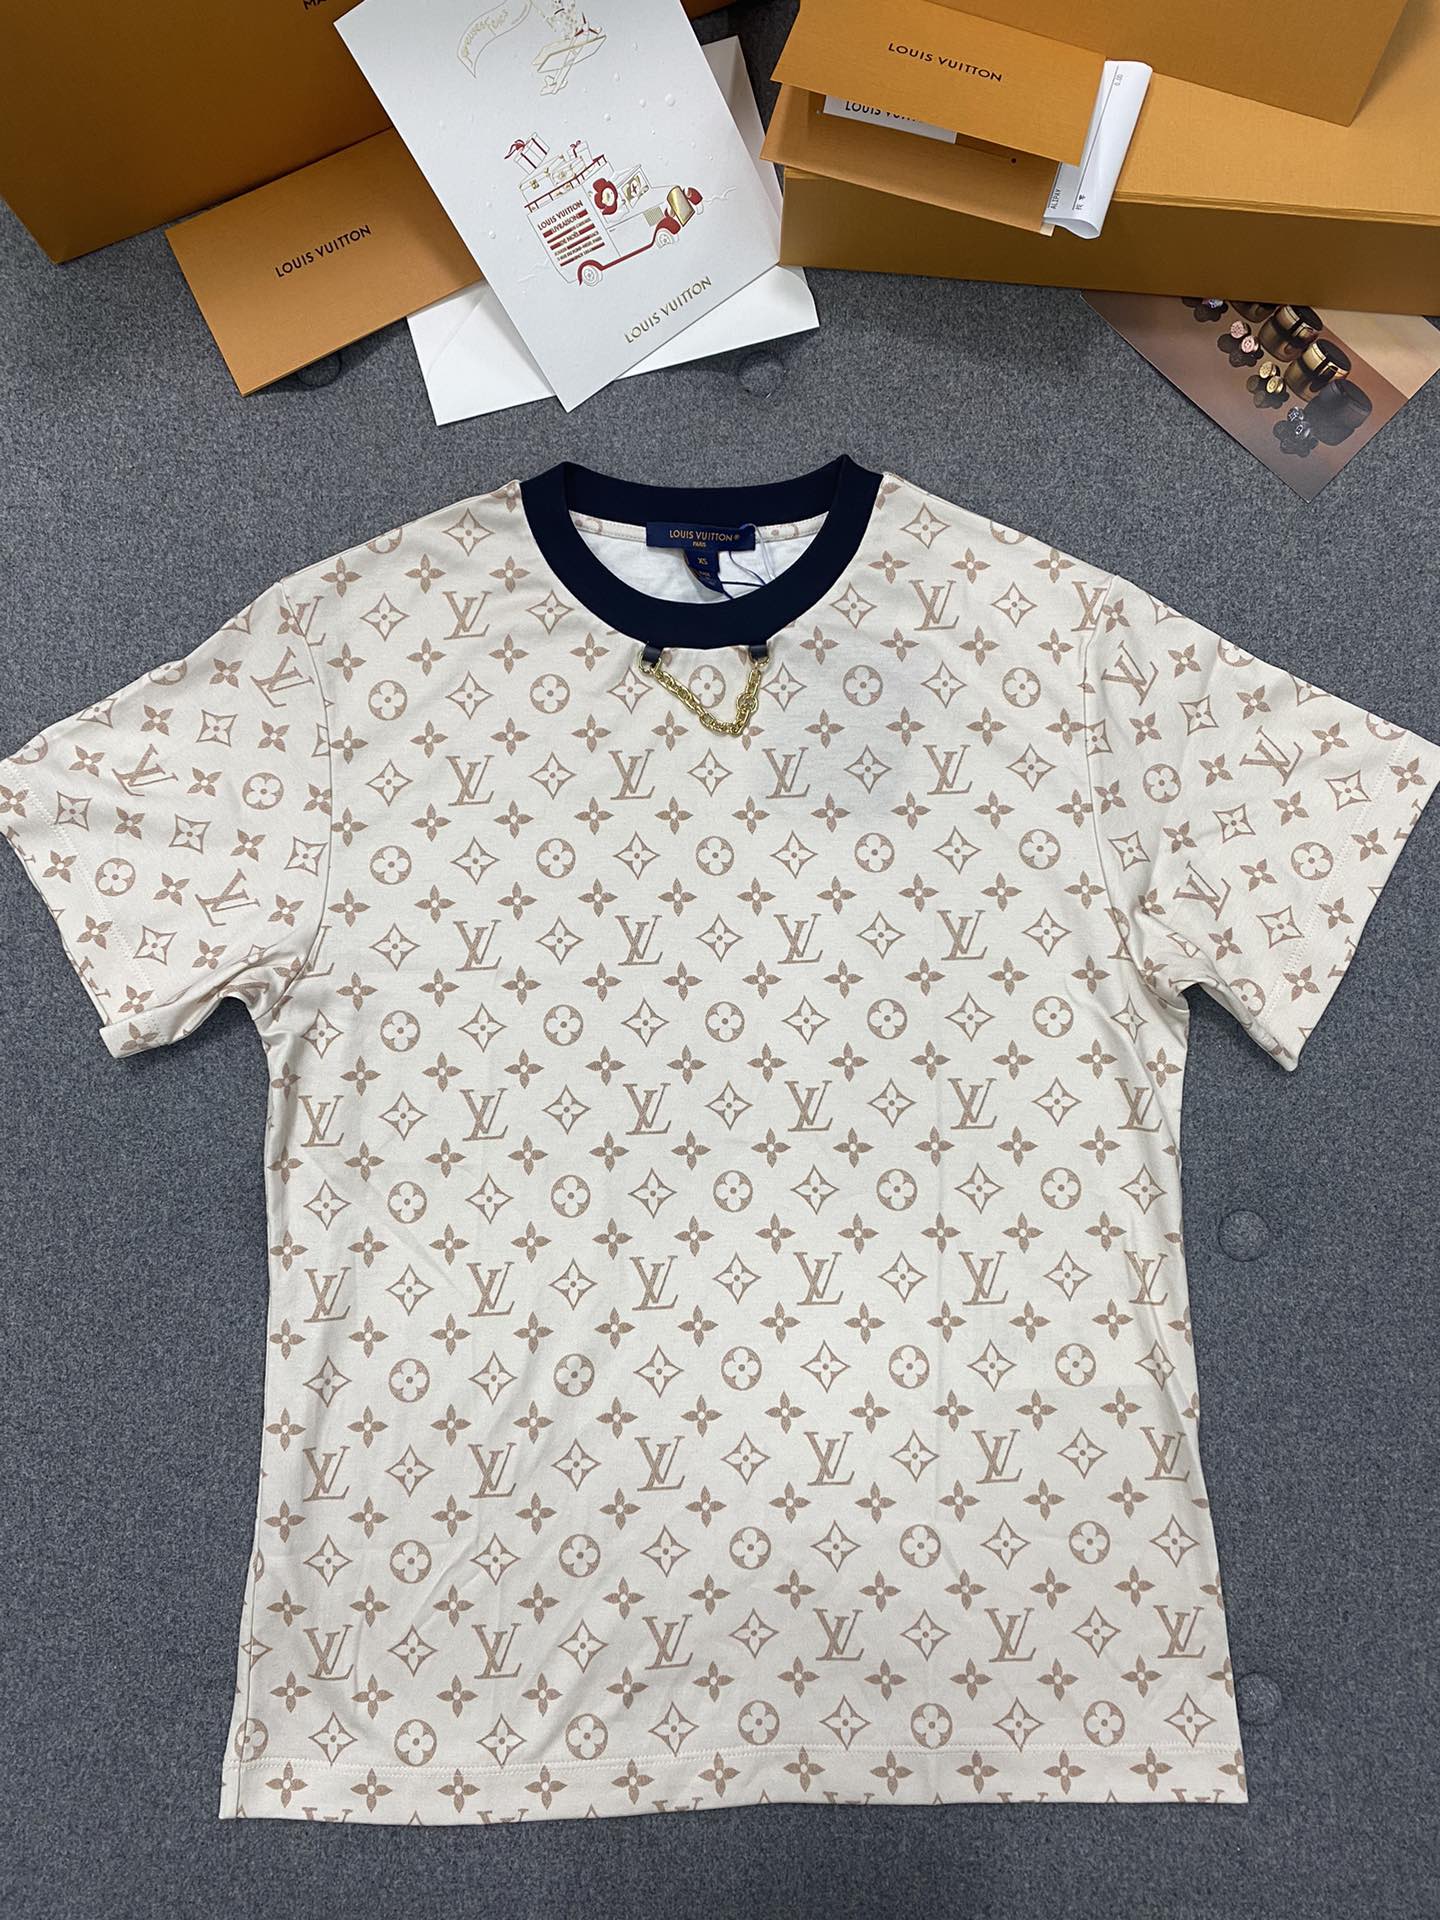 Louis Vuitton Clothing T-Shirt Milk Tea Color Printing Cotton